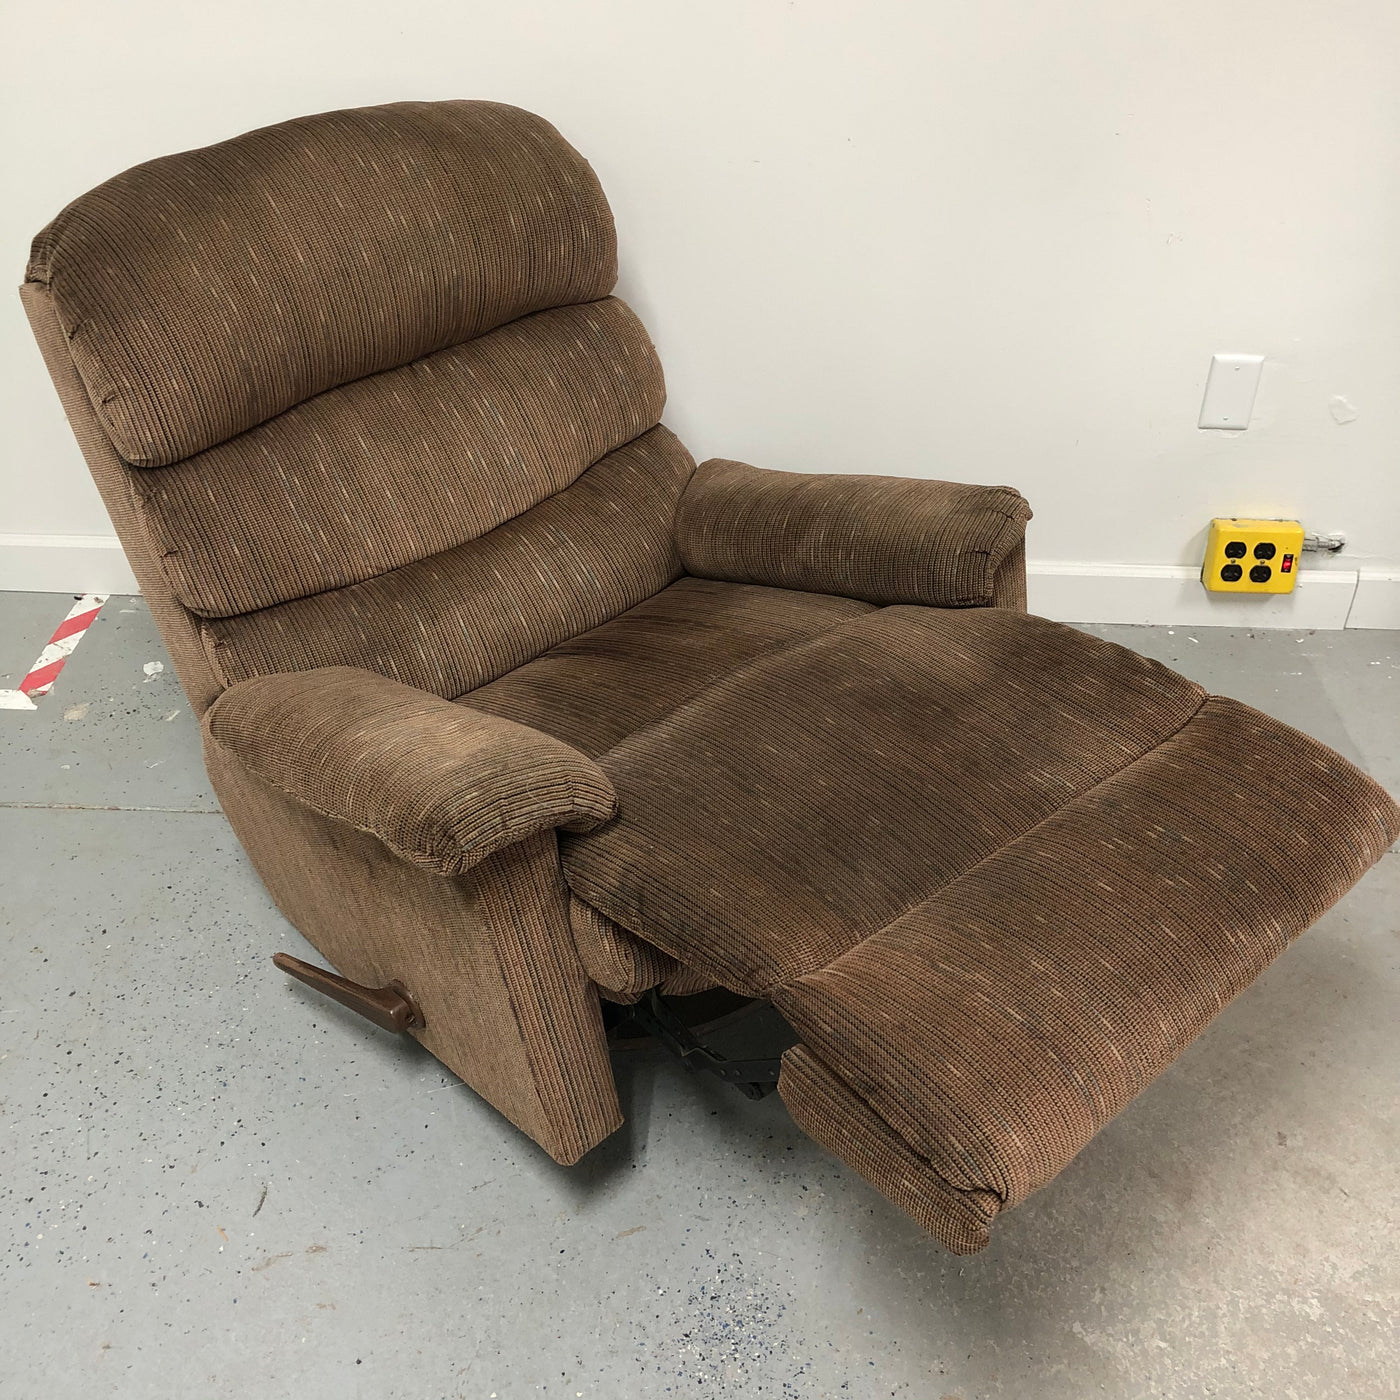 Sears Roebuck Polyester Fiber Brown Rocker Reclining Chair Recliner M15salescom